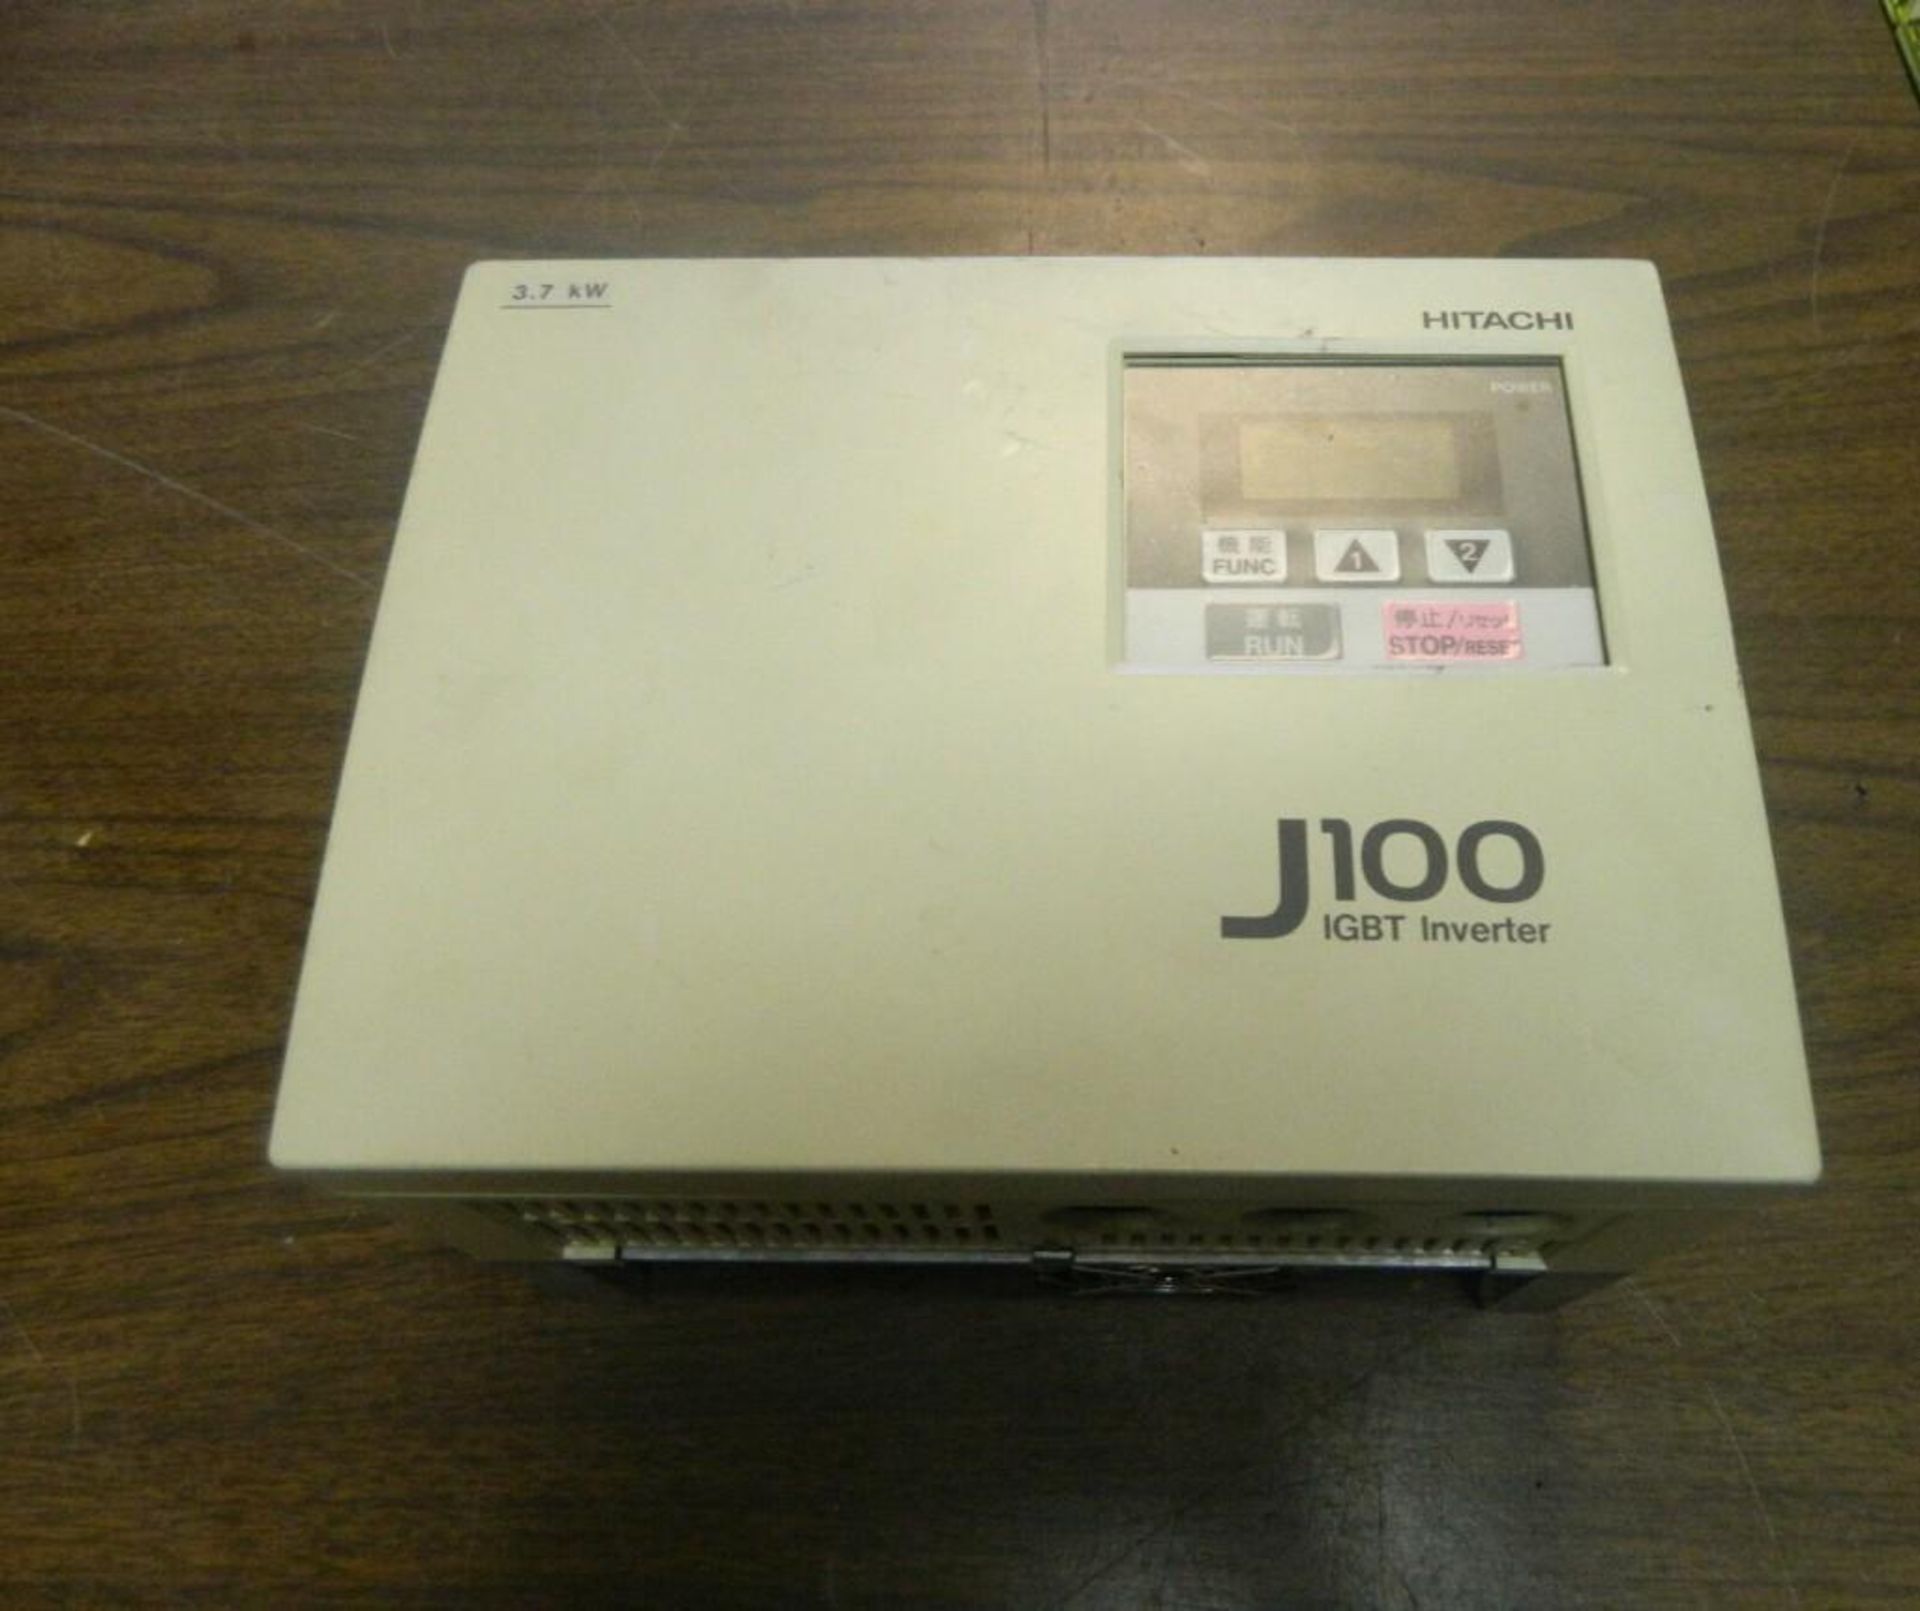 Hitachi J100 IGBT Inverter, 3.7 kW, 400-460V, 60 Hz, J100 037HFE